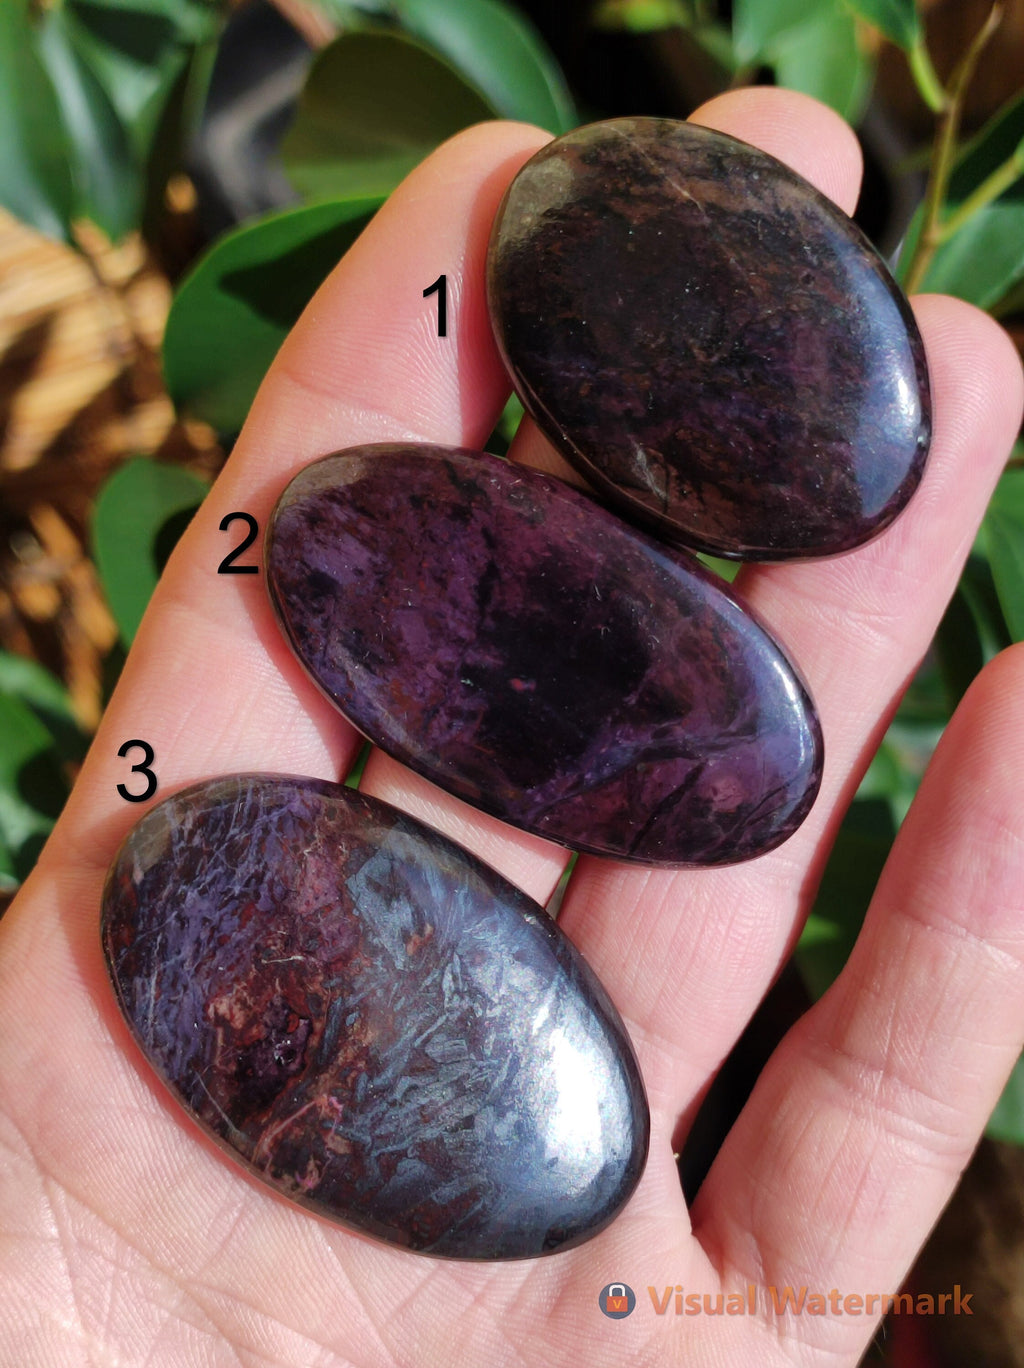 Sugilith Sugilite Cabochons natürlich - Seltener Wertvoller Heilstein lila violett Rarität Mineral Sammler Kristall besonders Investition